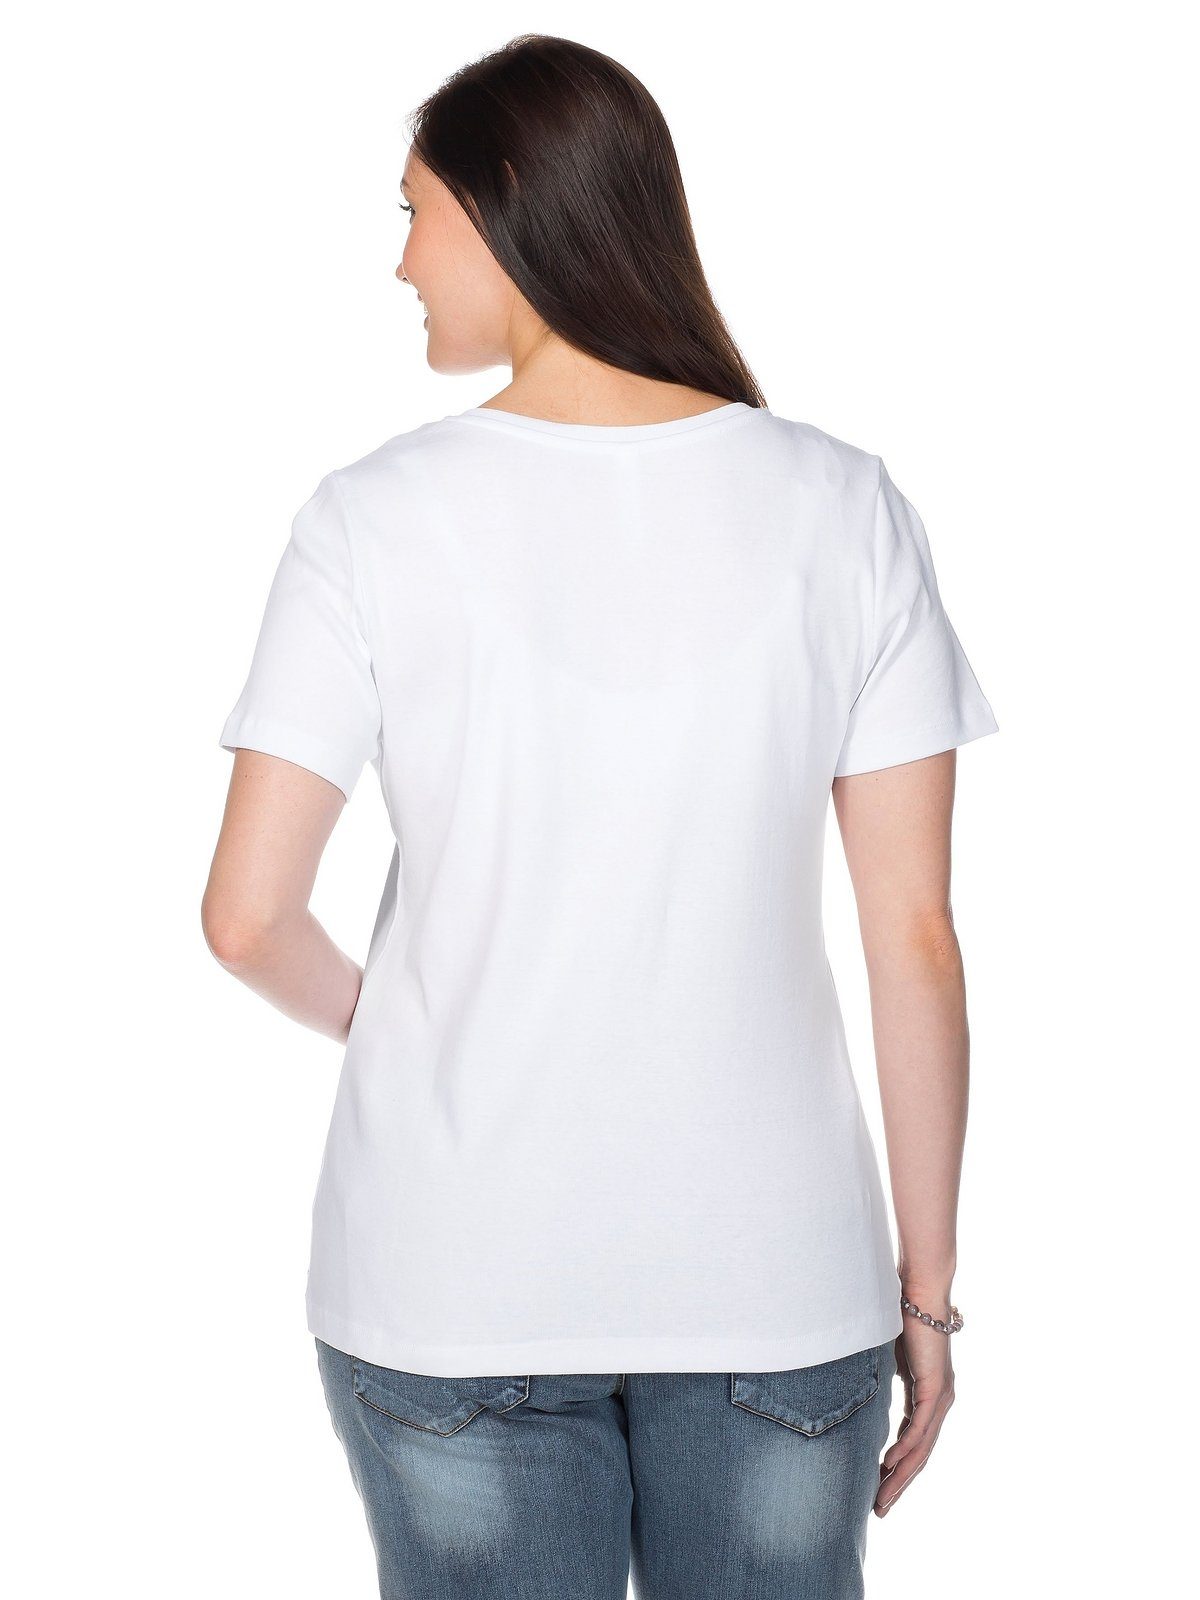 Sheego T-Shirt Große Größen aus weiß fein Qualität gerippter